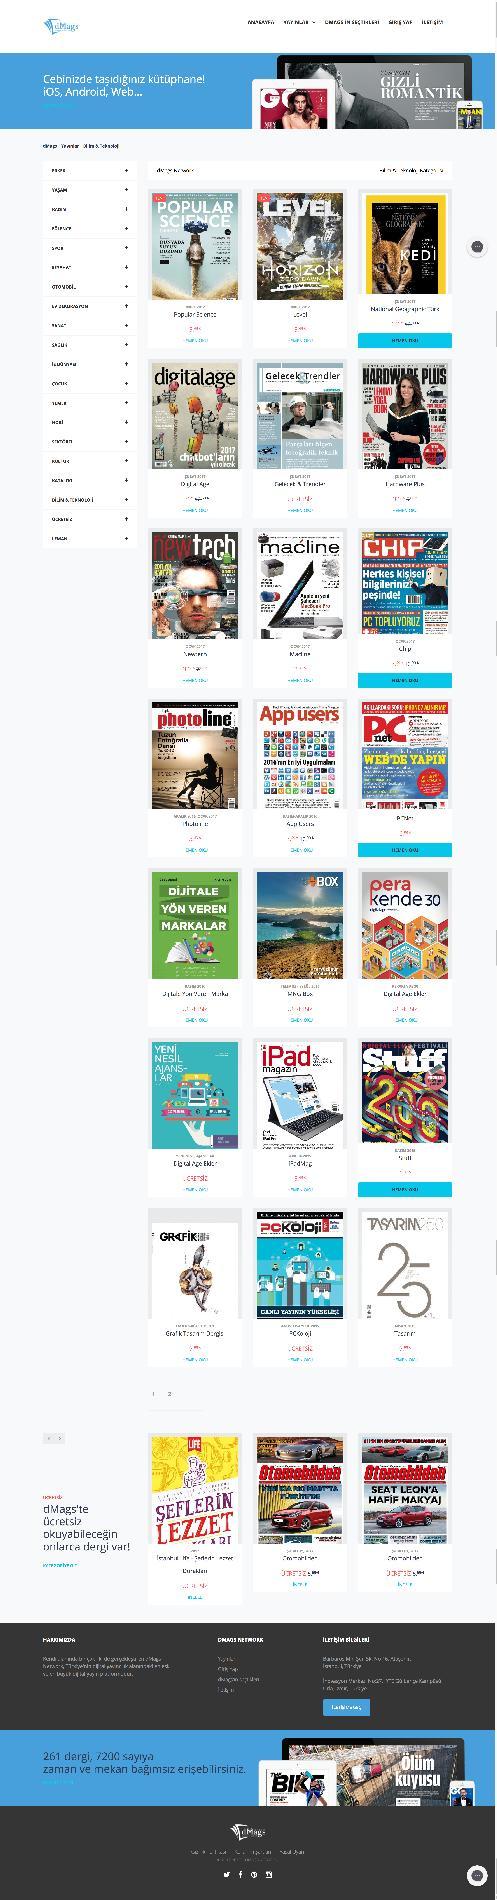 dmags web Yayınlar Menü alanı; - Anasayfa, - Yayınlar - dmags in Seçtikleri - Giriş Yap - İletişim Seçilen kategori ile ilgili kampanyaların ve dmags tanıtımlarının